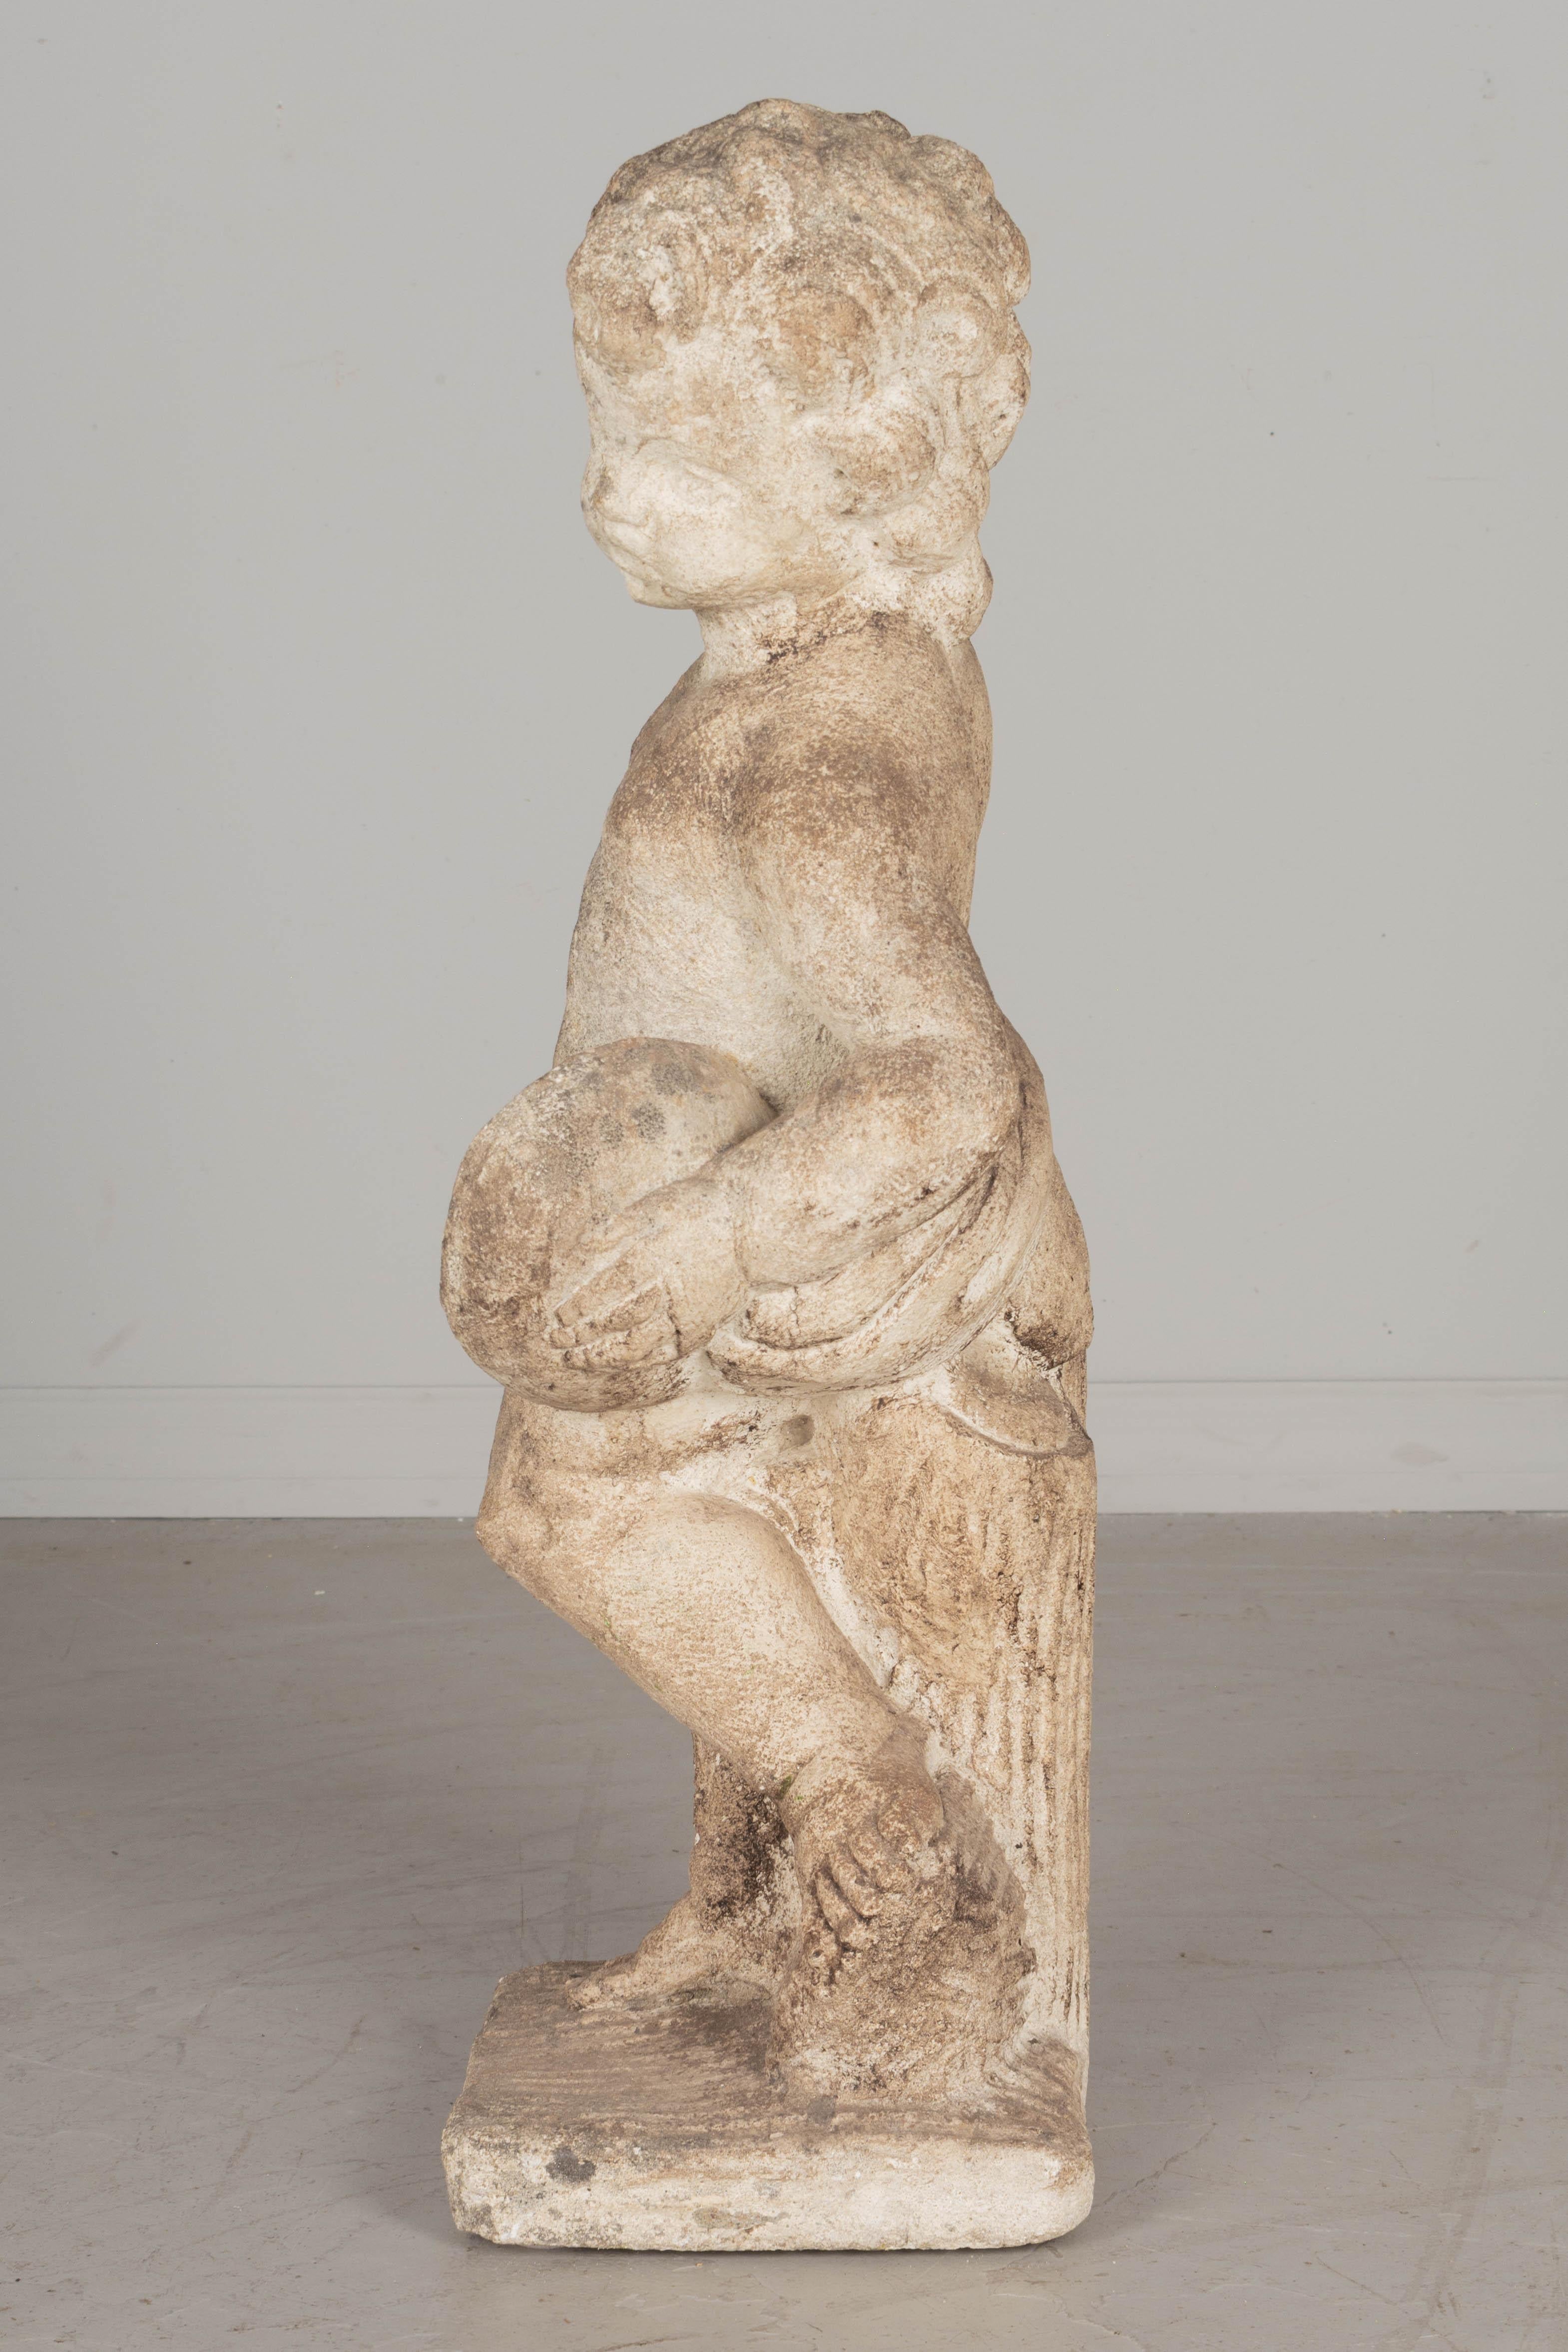 Französische Gartenstatue aus gegossenem Kompositstein, die ein zimbelspielendes Kind in Engelsgestalt darstellt. Guter Zustand mit moosiger Patina. Um 1950er Jahre. 
Abmessungen: 28 